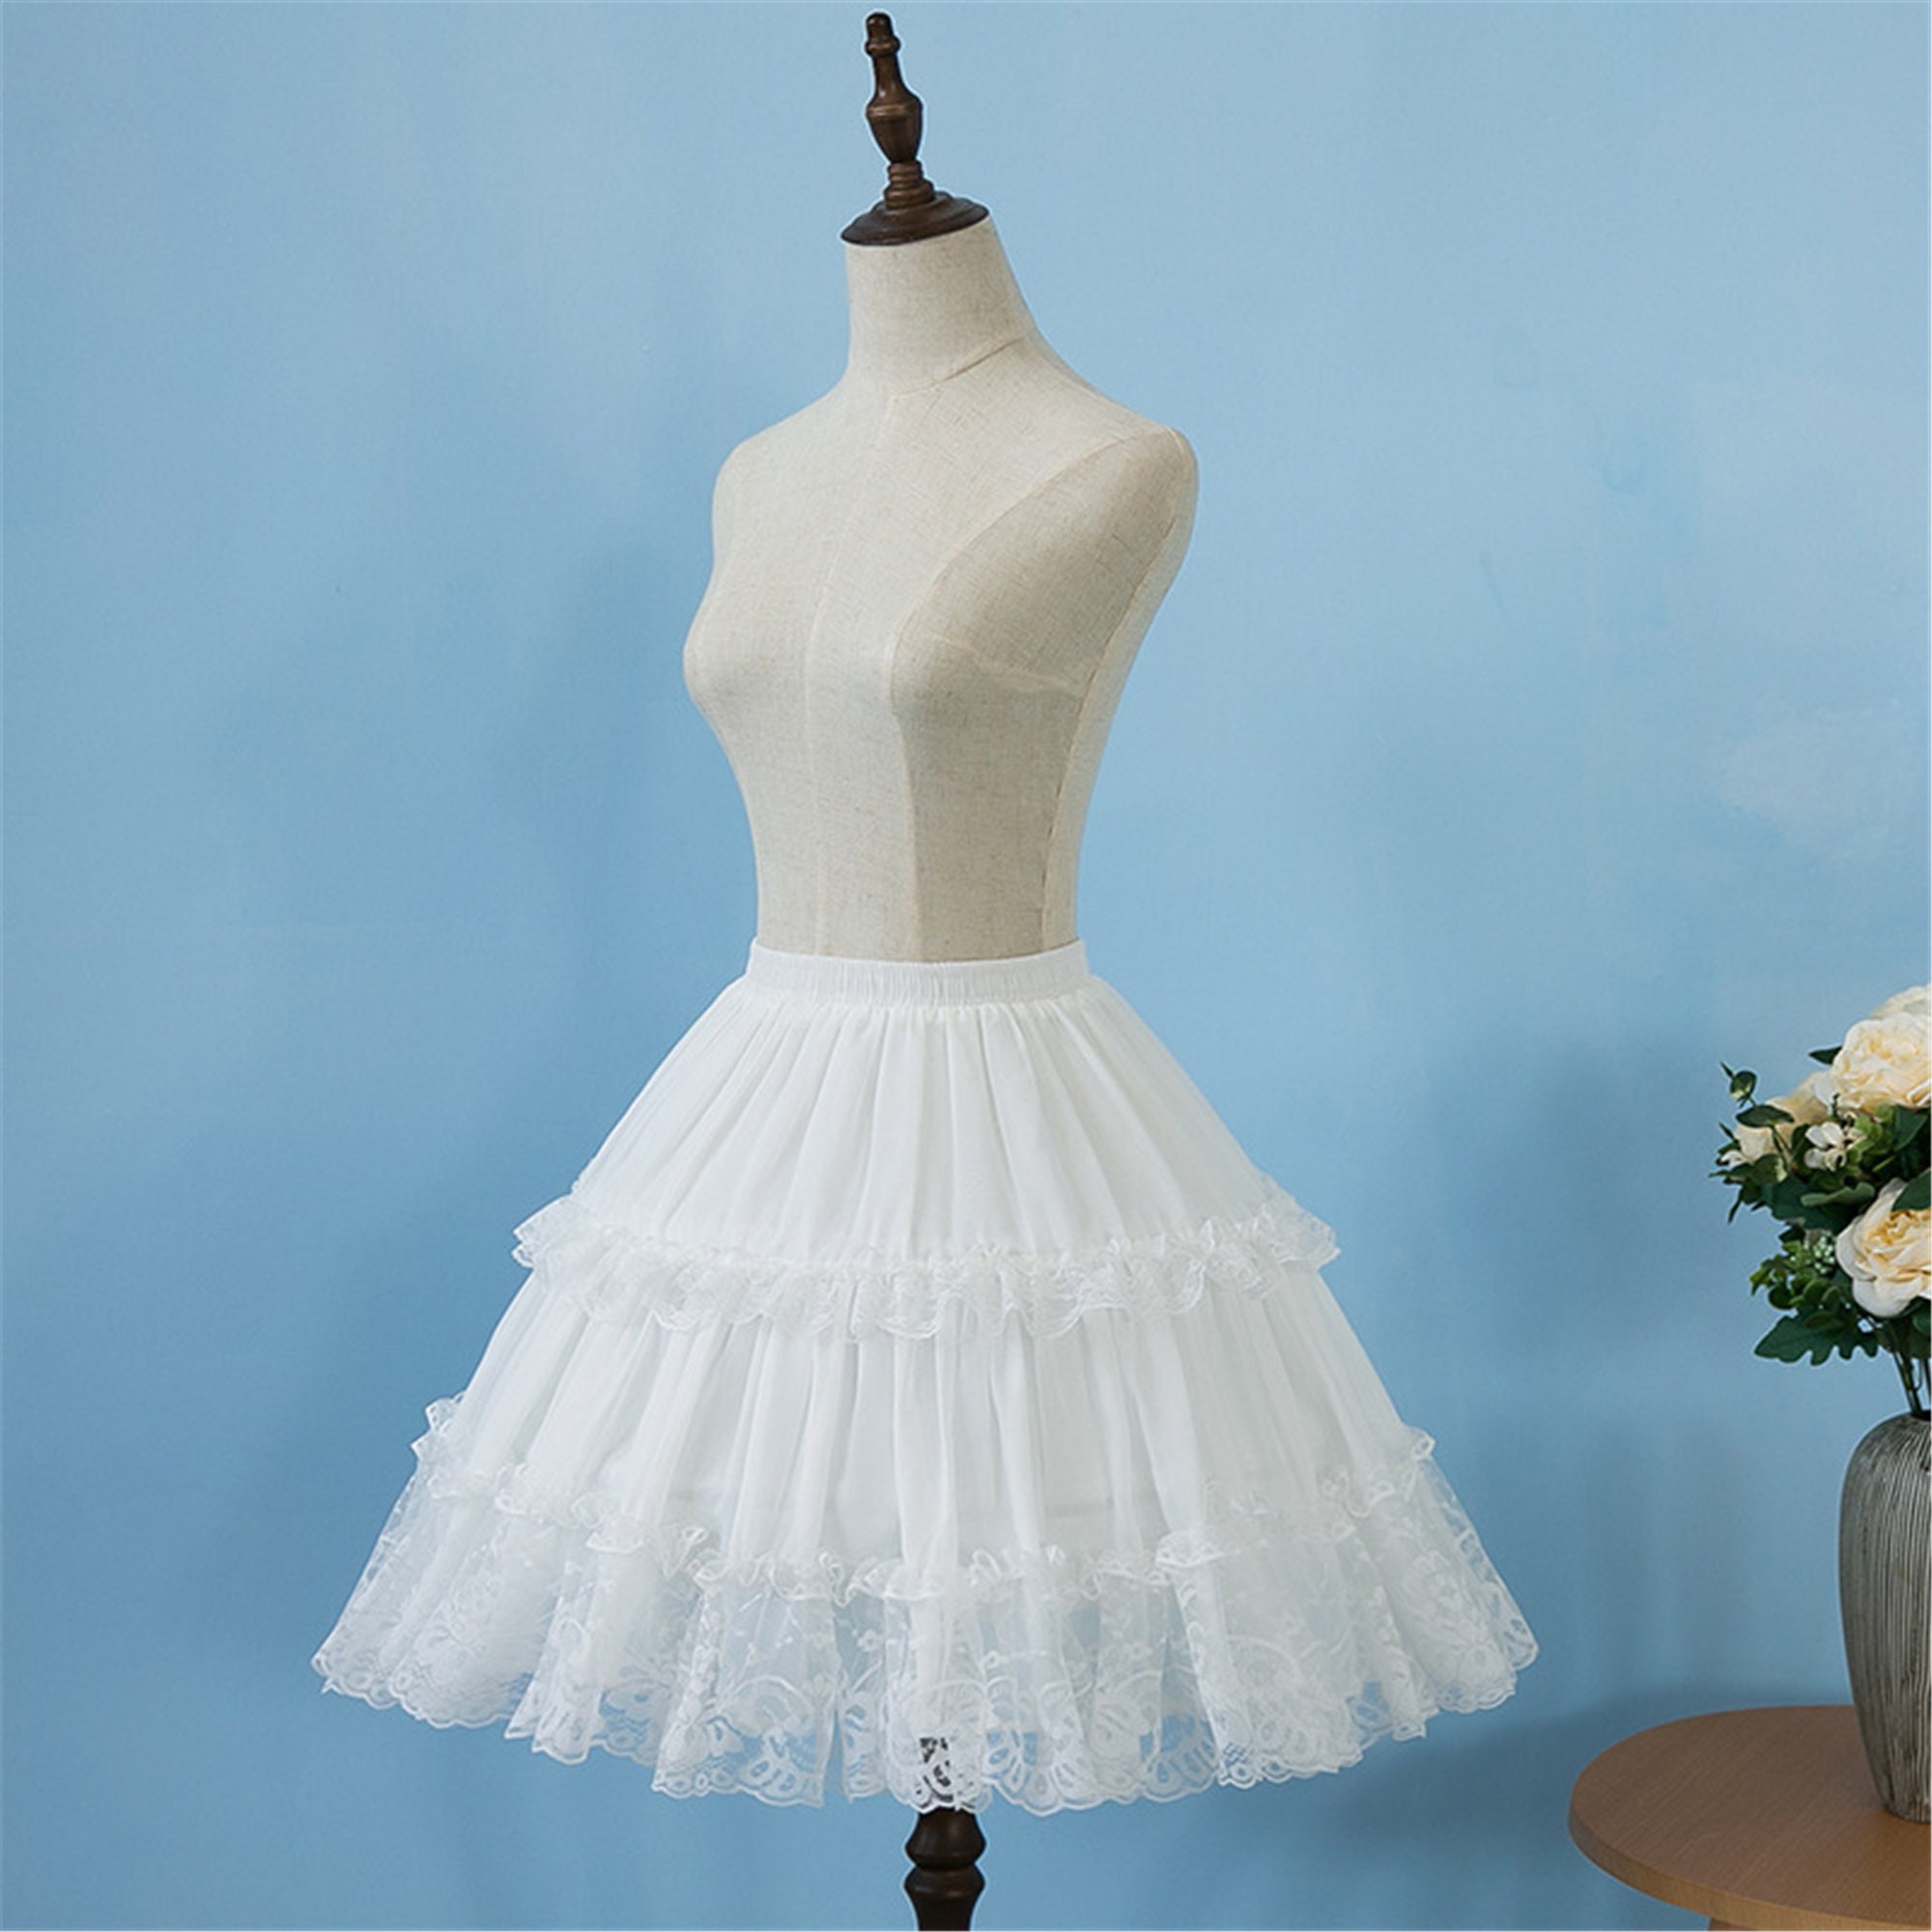 Lolita Lace Hoop Petticoat 2 Layer Lace Ruffle Petticoat | Etsy